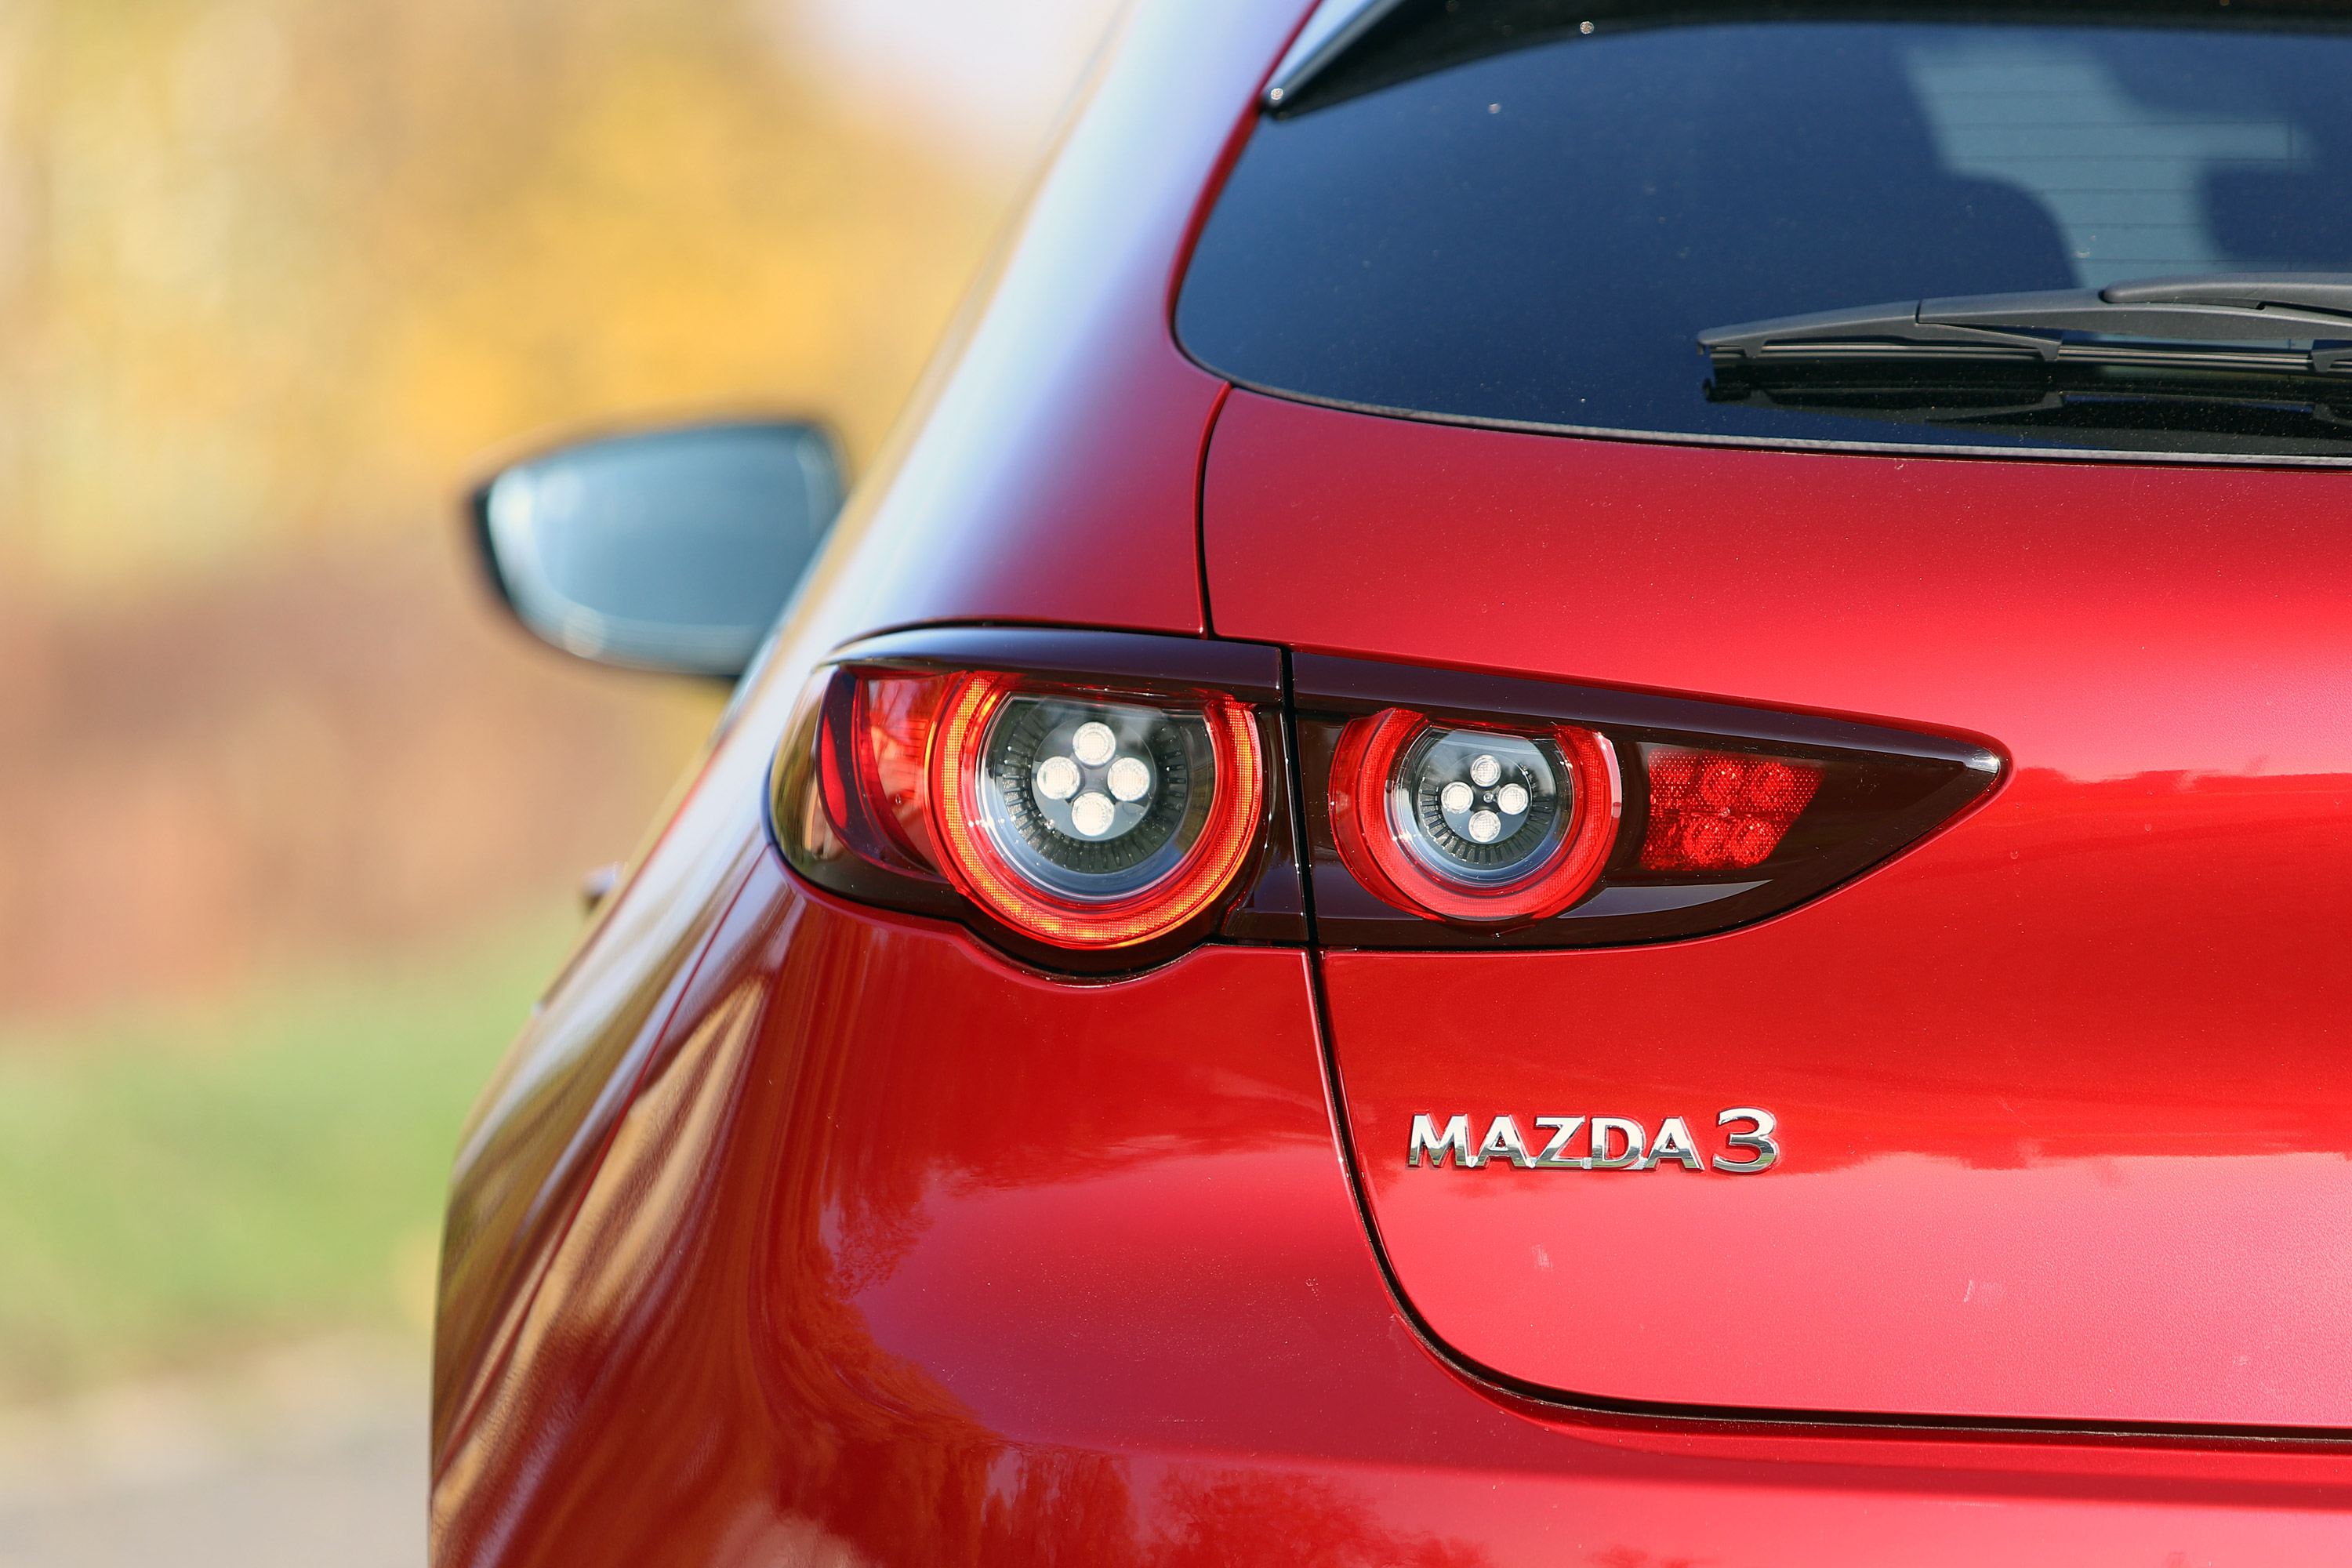 Benzinmotor, ami eddig még senkinek nem sikerült – Mazda3 Skyactiv-X teszt 15